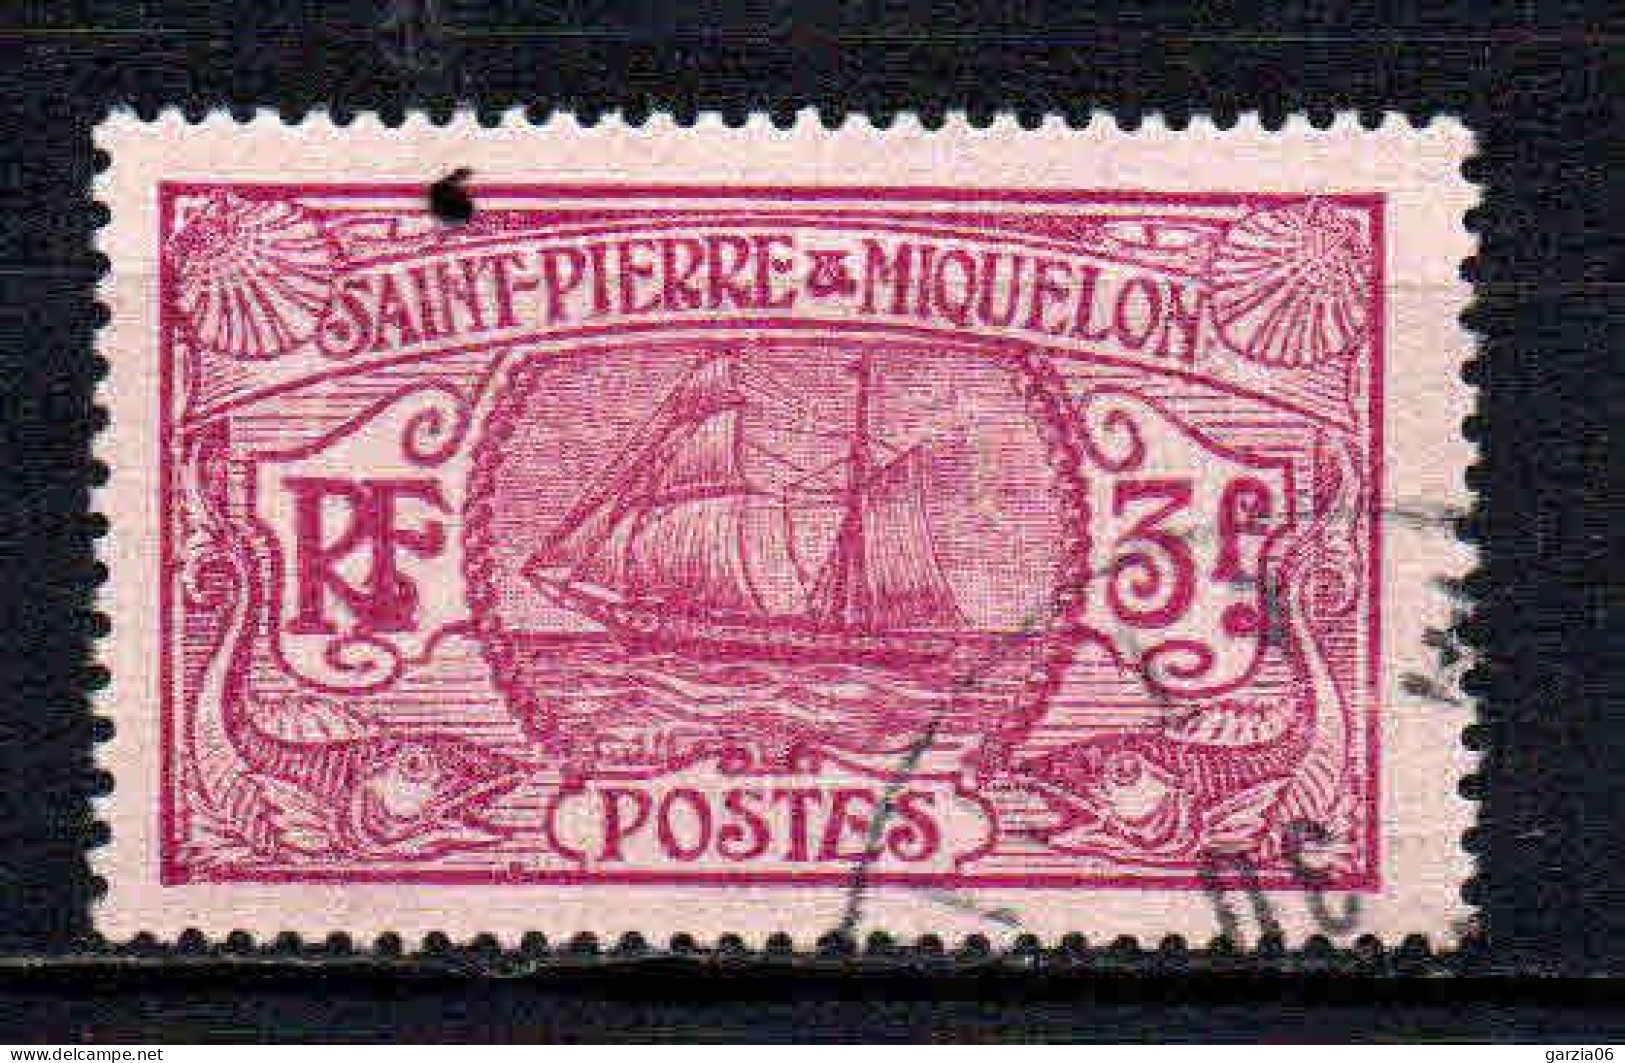 St Pierre Et Miquelon    - 1930 - Bateau De Pêche   - N° 131  - Oblit - Used - Gebraucht